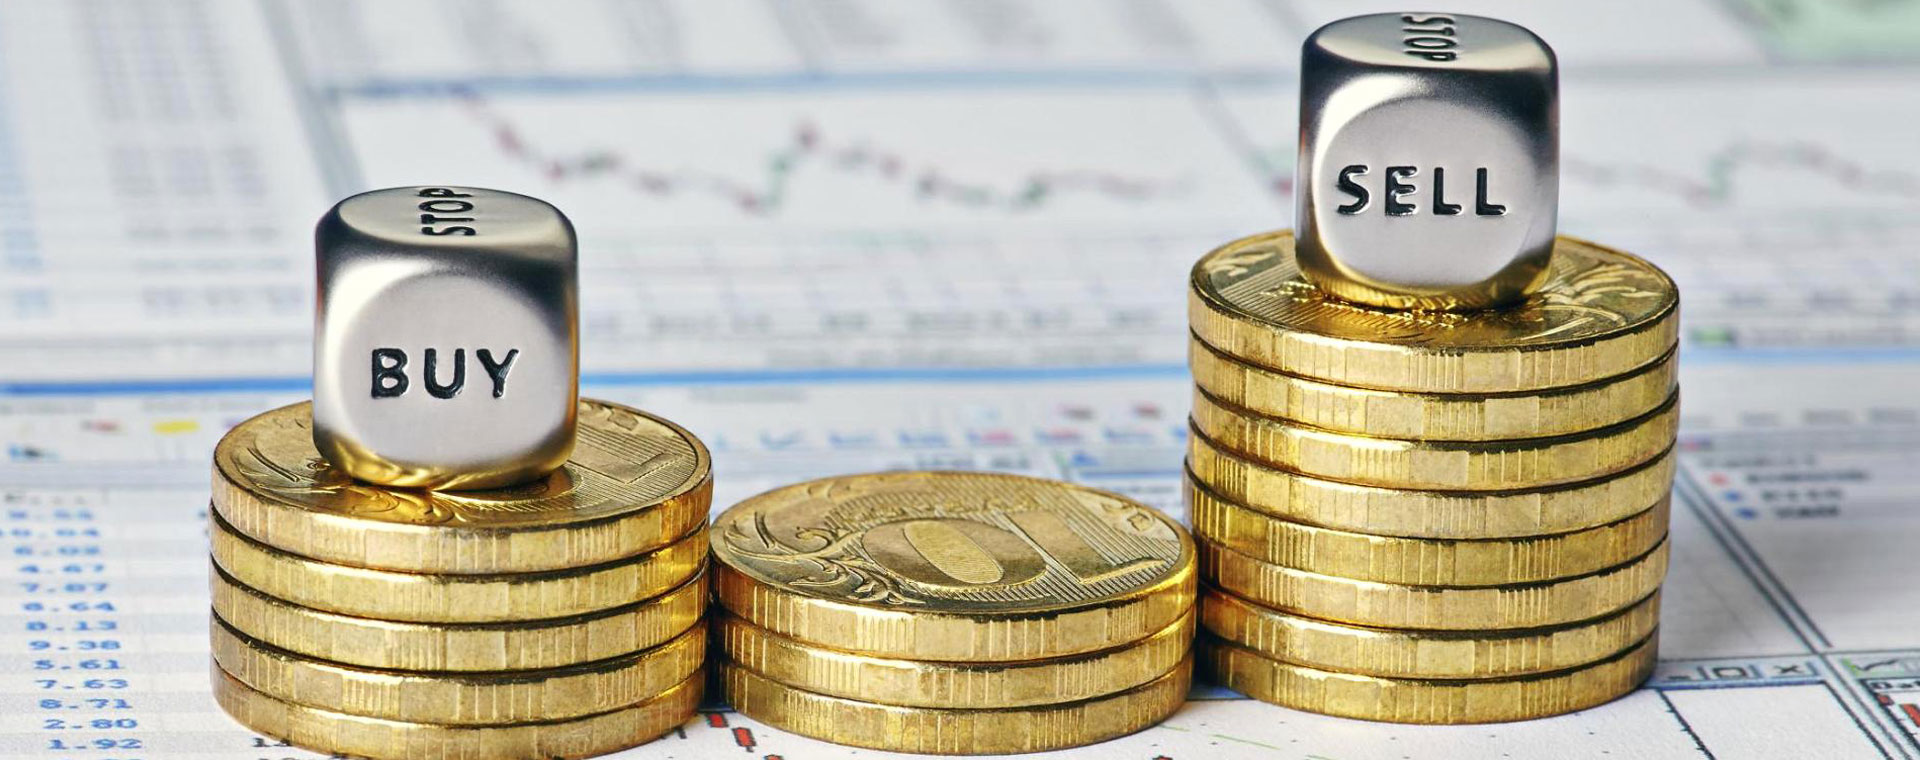 ВТБ размещает инвестиционные облигации на 3 млрд рублей с привязкой к нефти и золоту